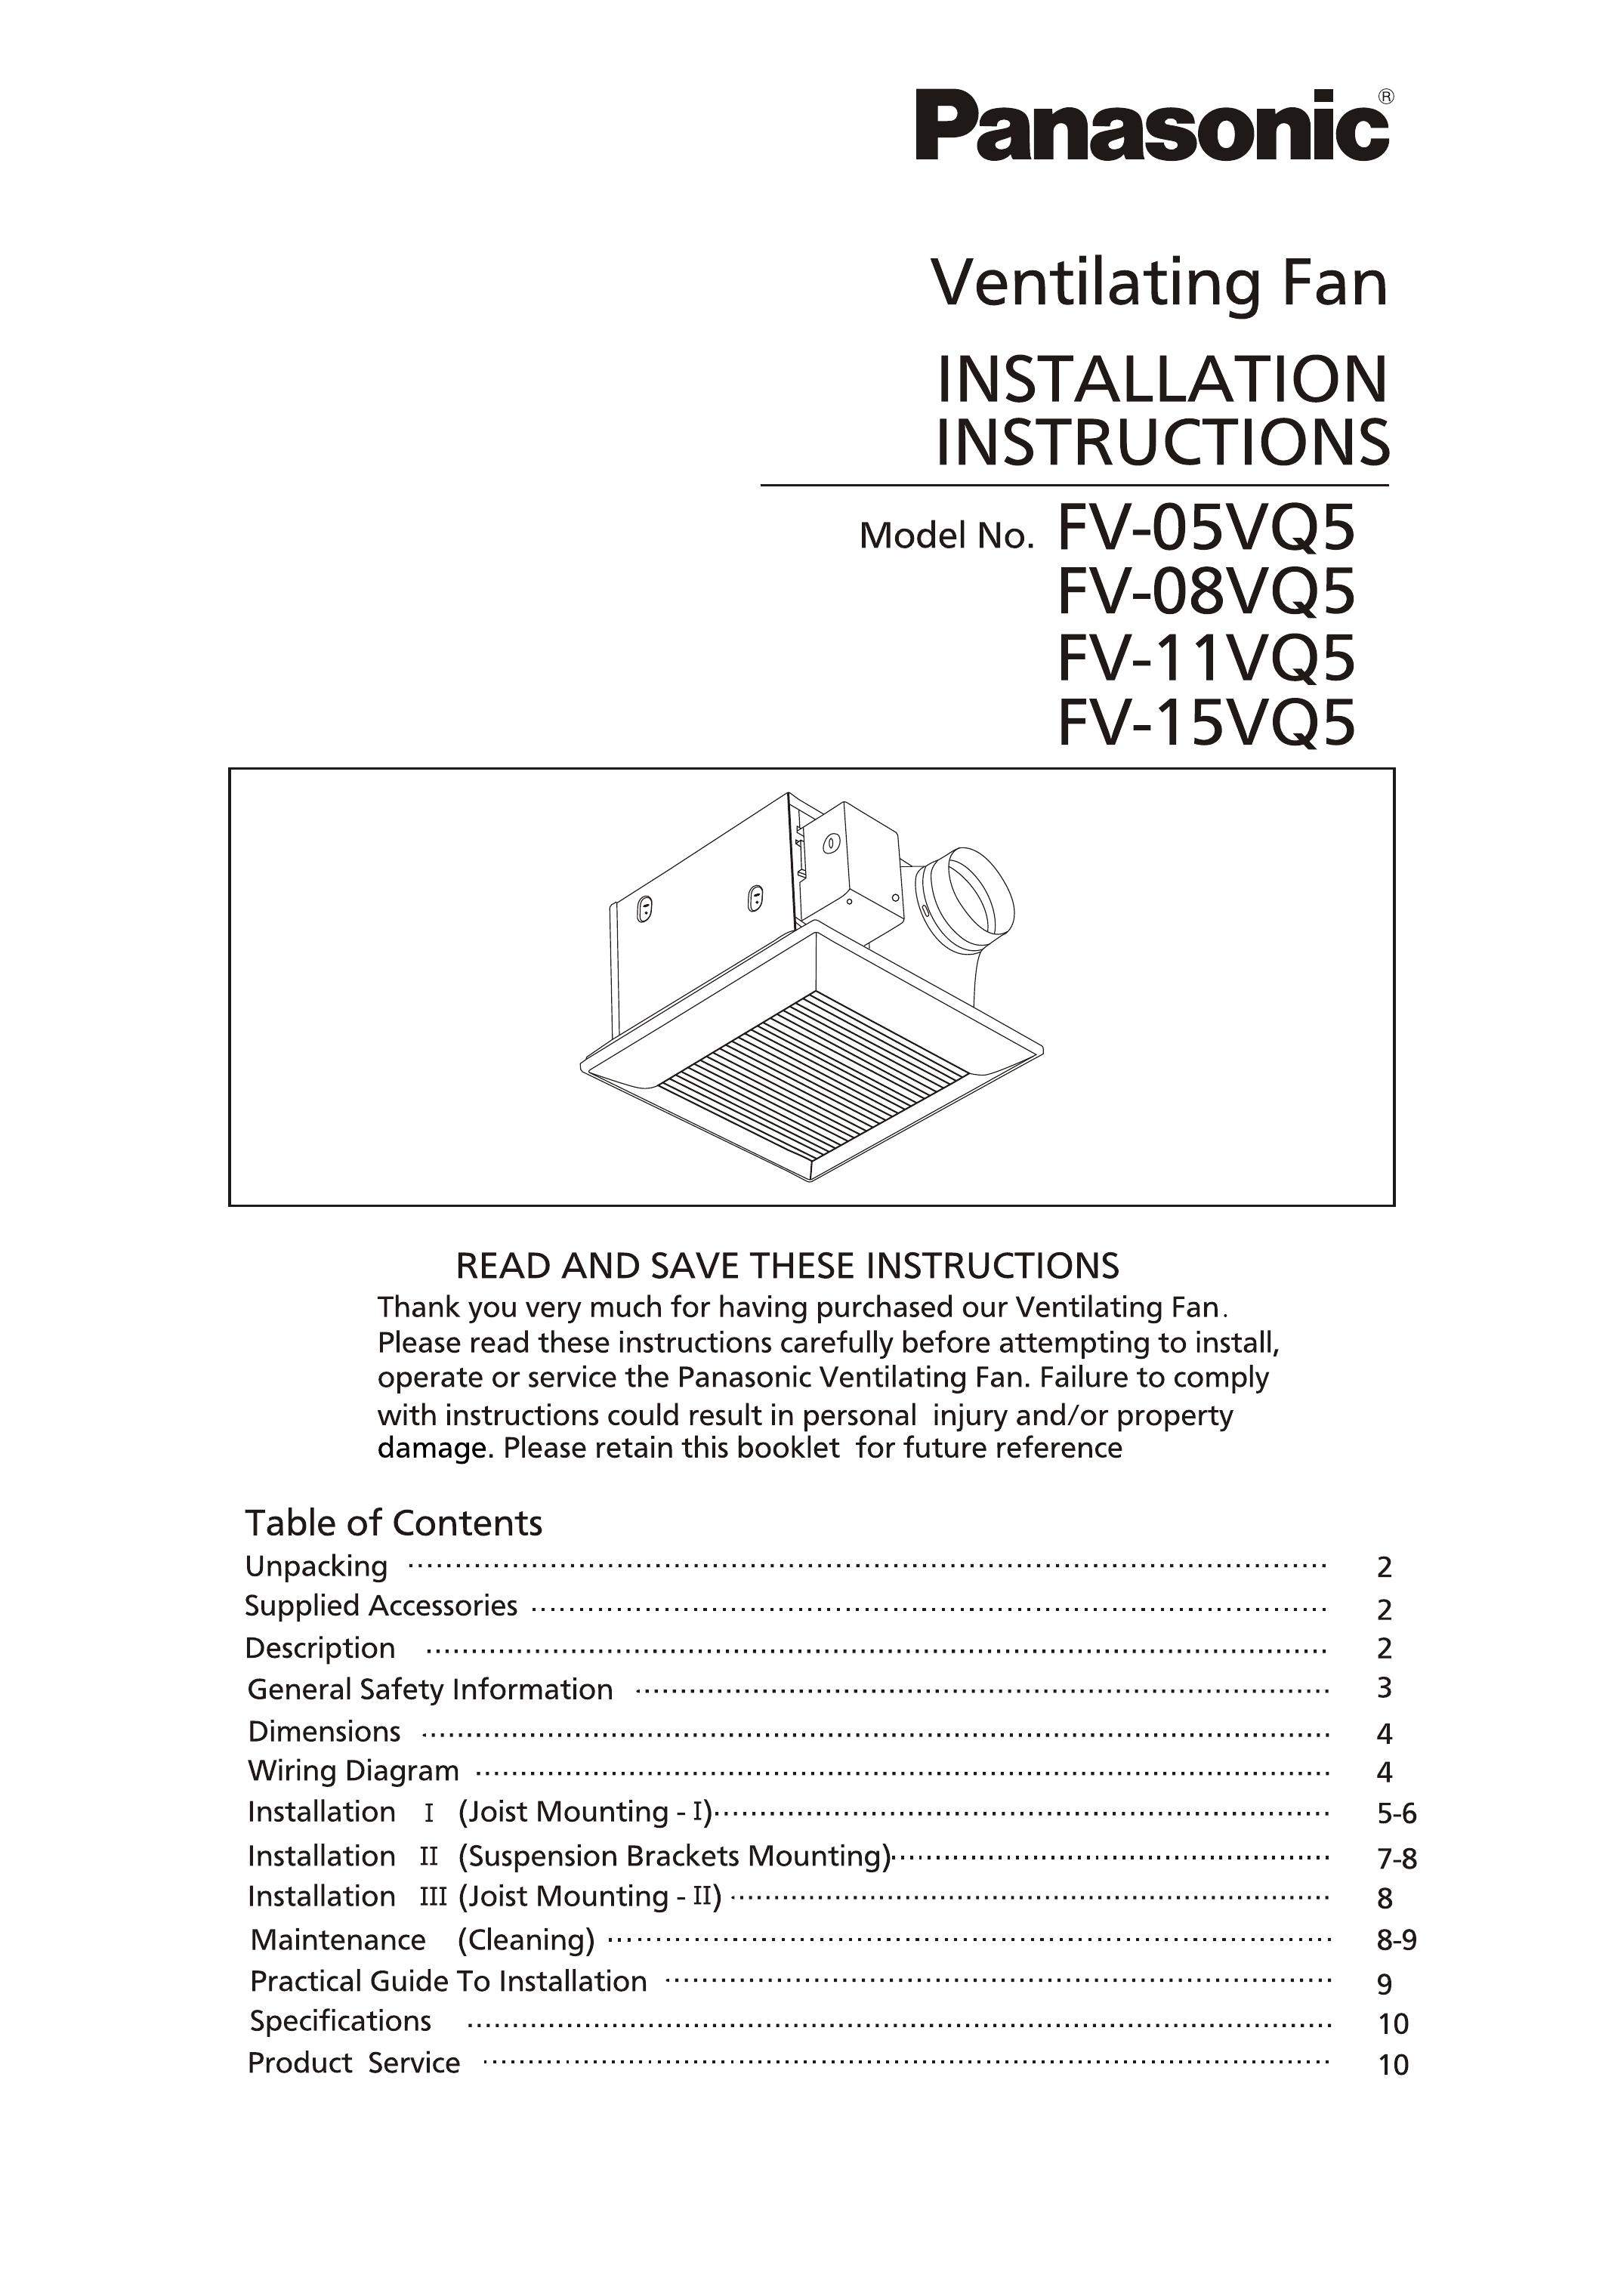 Panasonic FV-11VQ5 Ventilation Hood User Manual